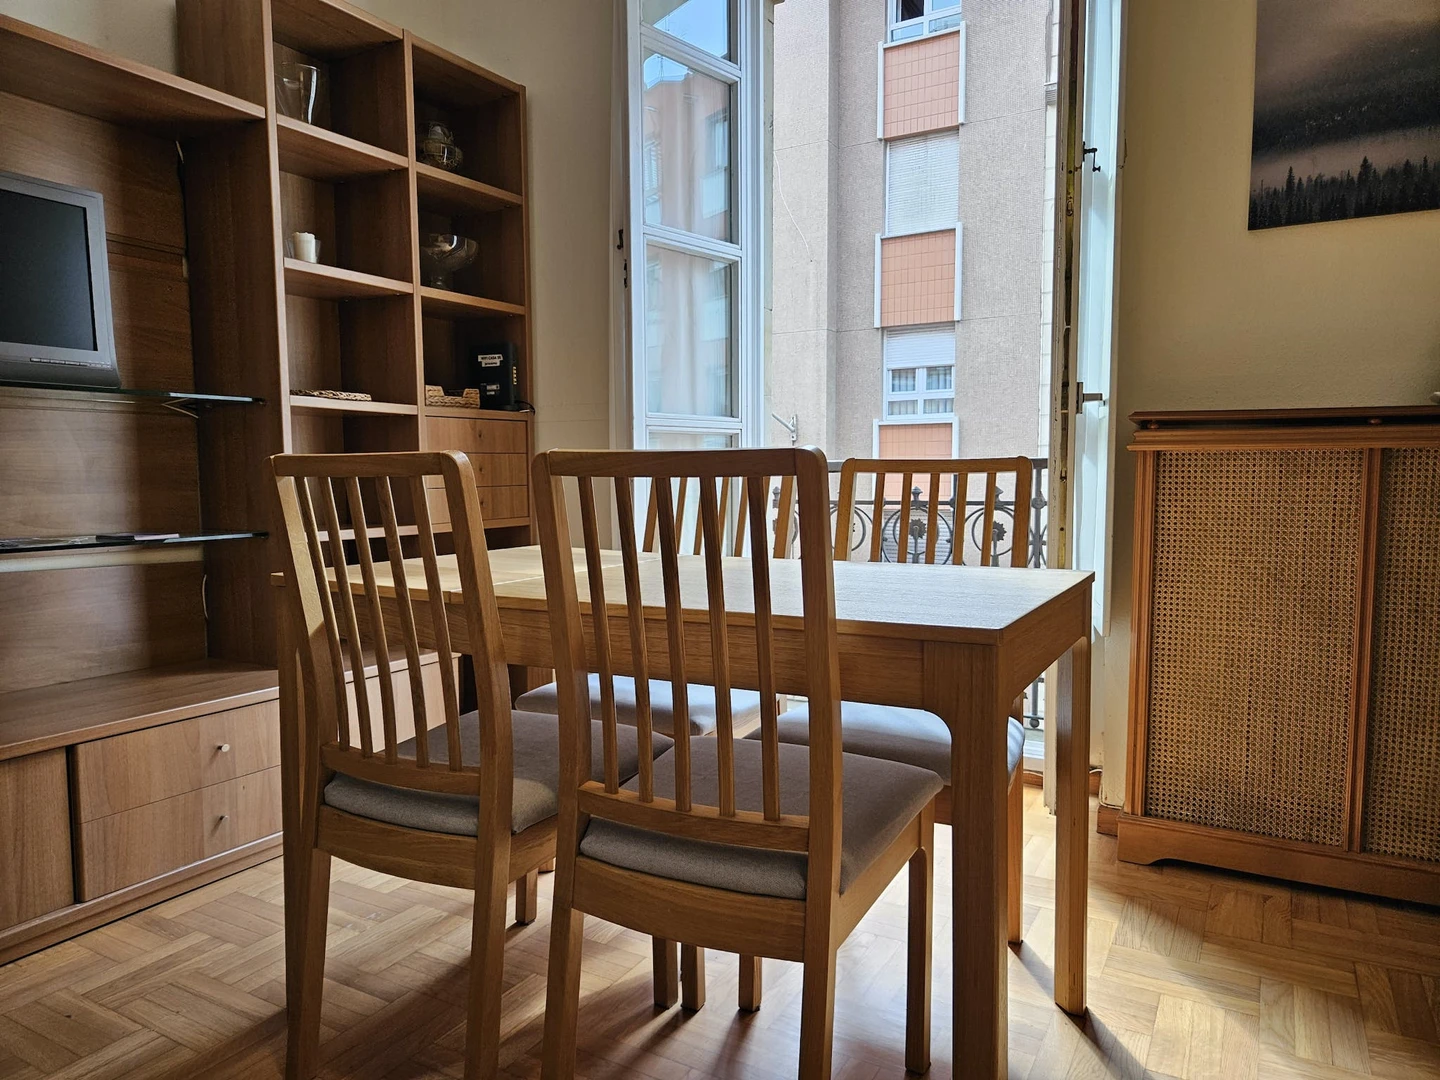 Habitación compartida con otro estudiante en Gijón